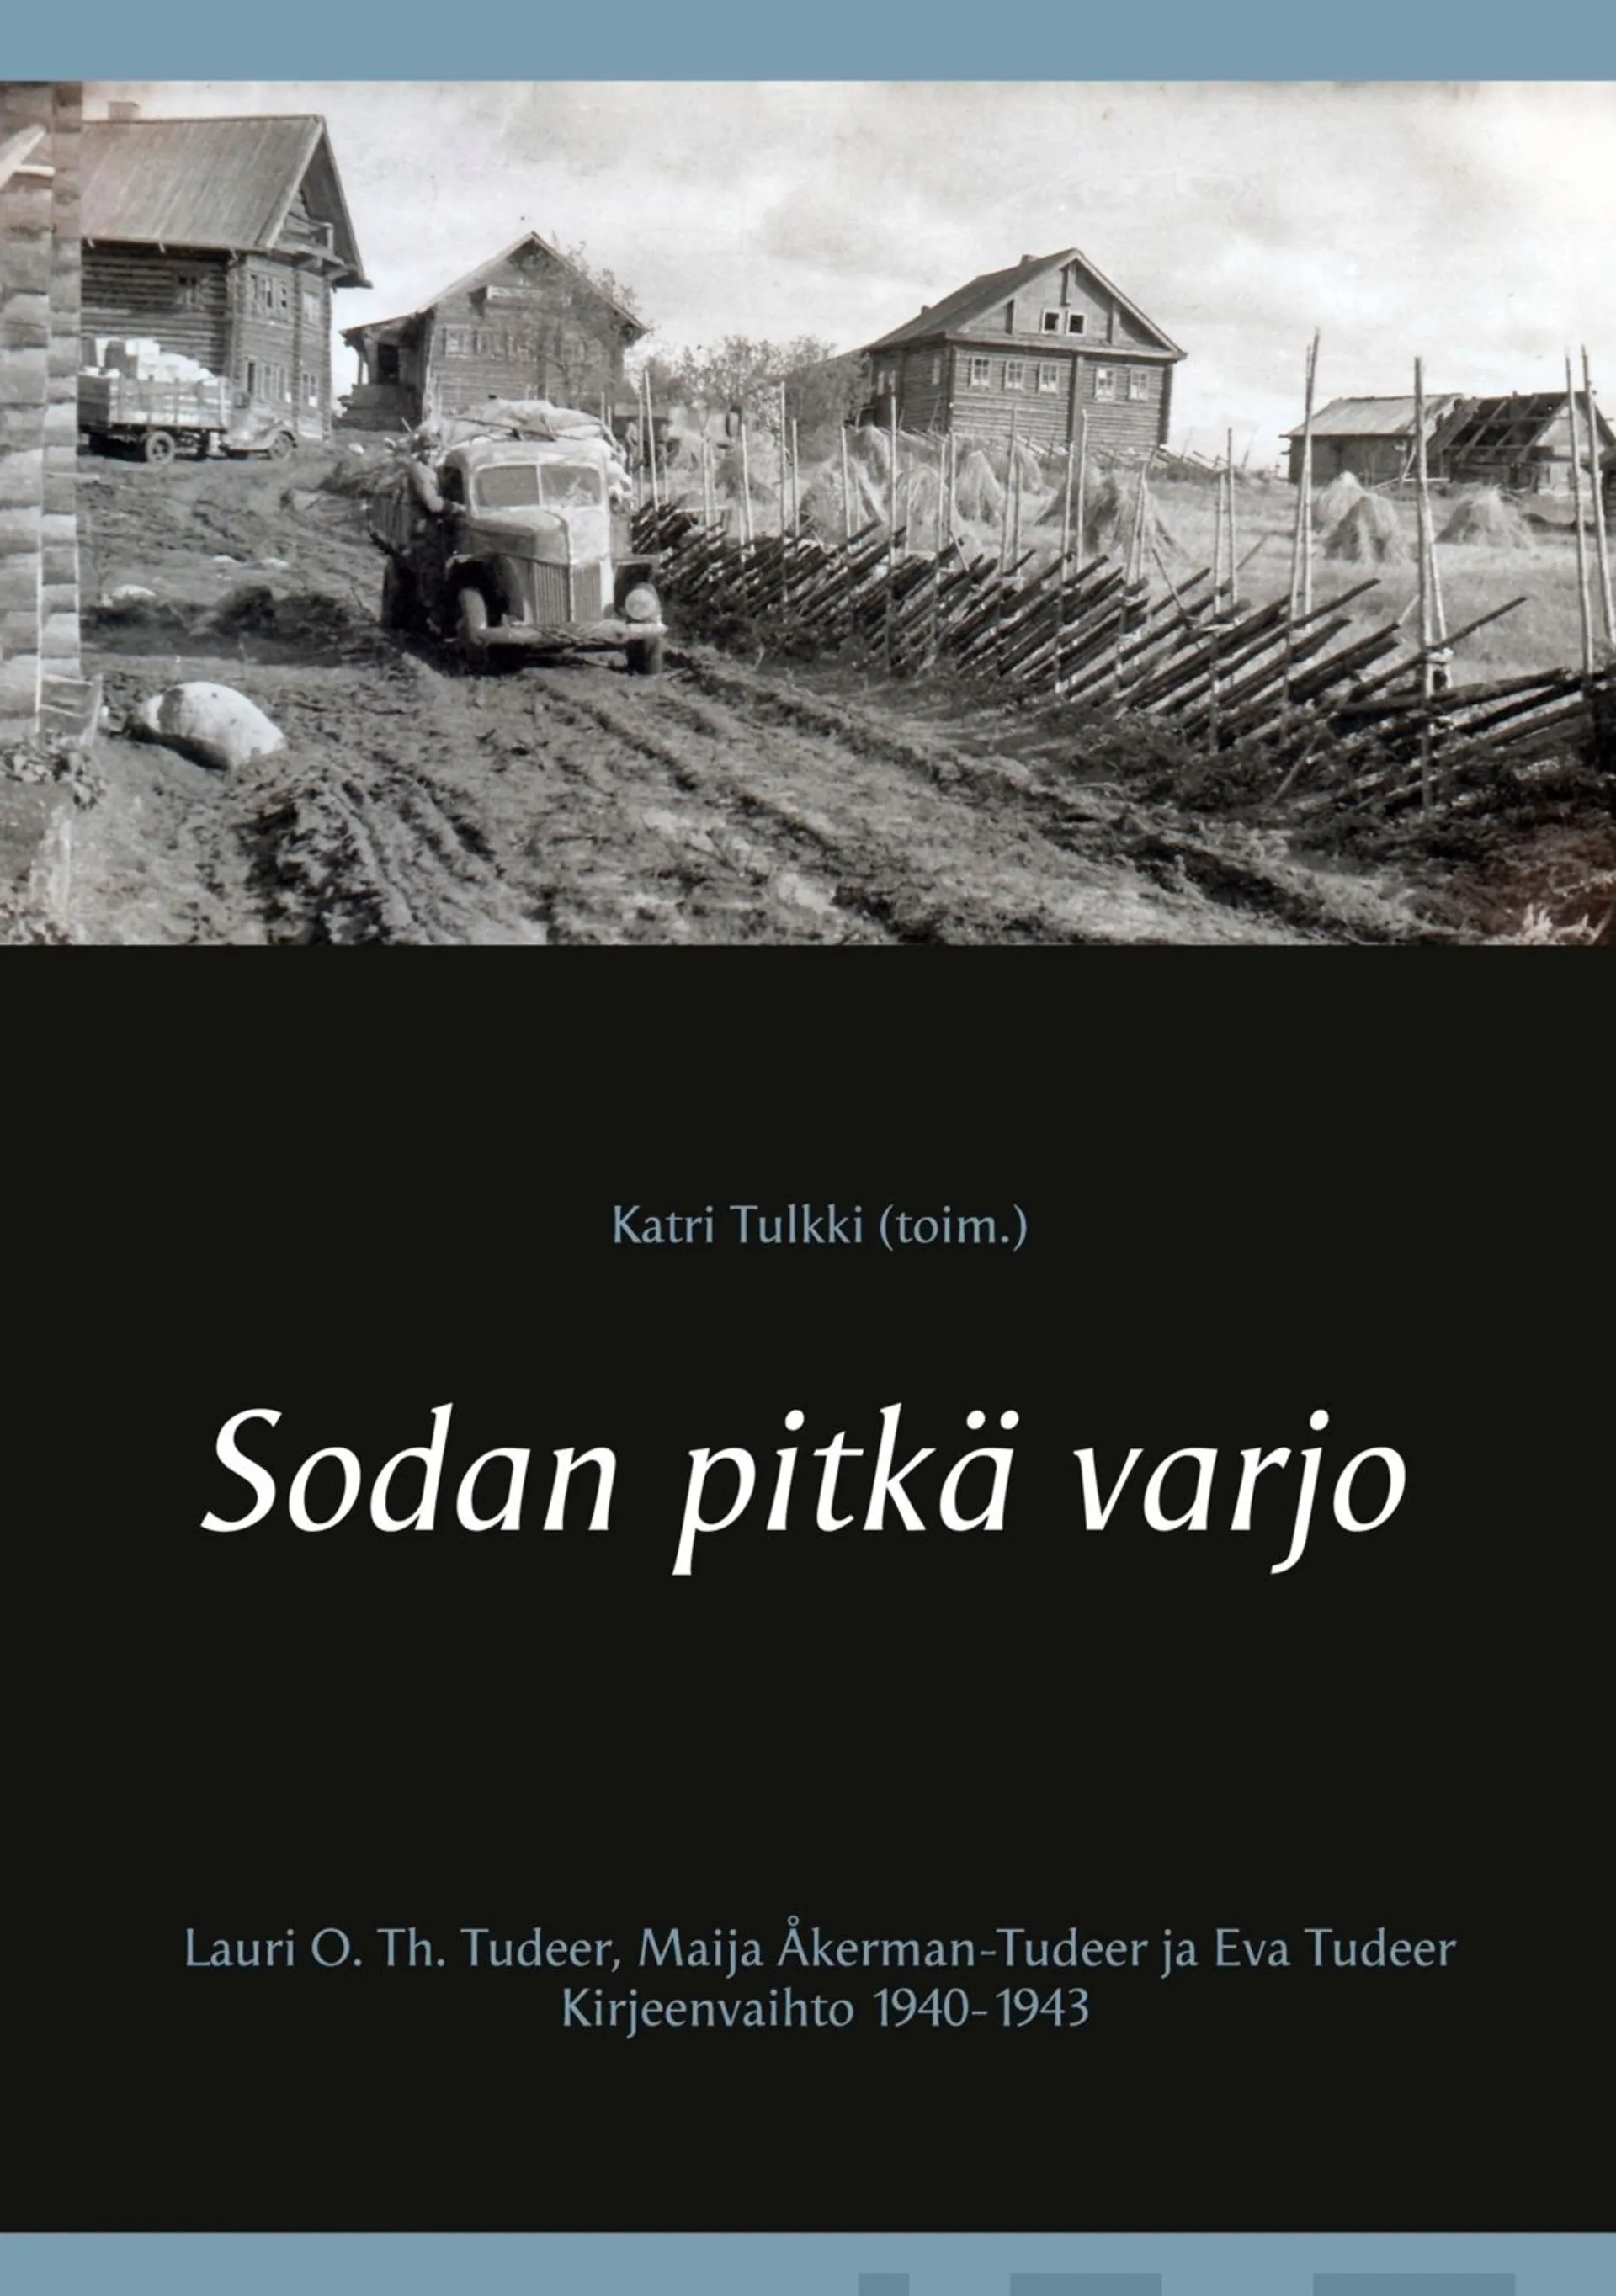 Sodan pitkä varjo - Lauri O. Th. Tudeer, Maija Åkerman-Tudeer ja Eva Tudeer. Kirjeenvaihto 1940-1943